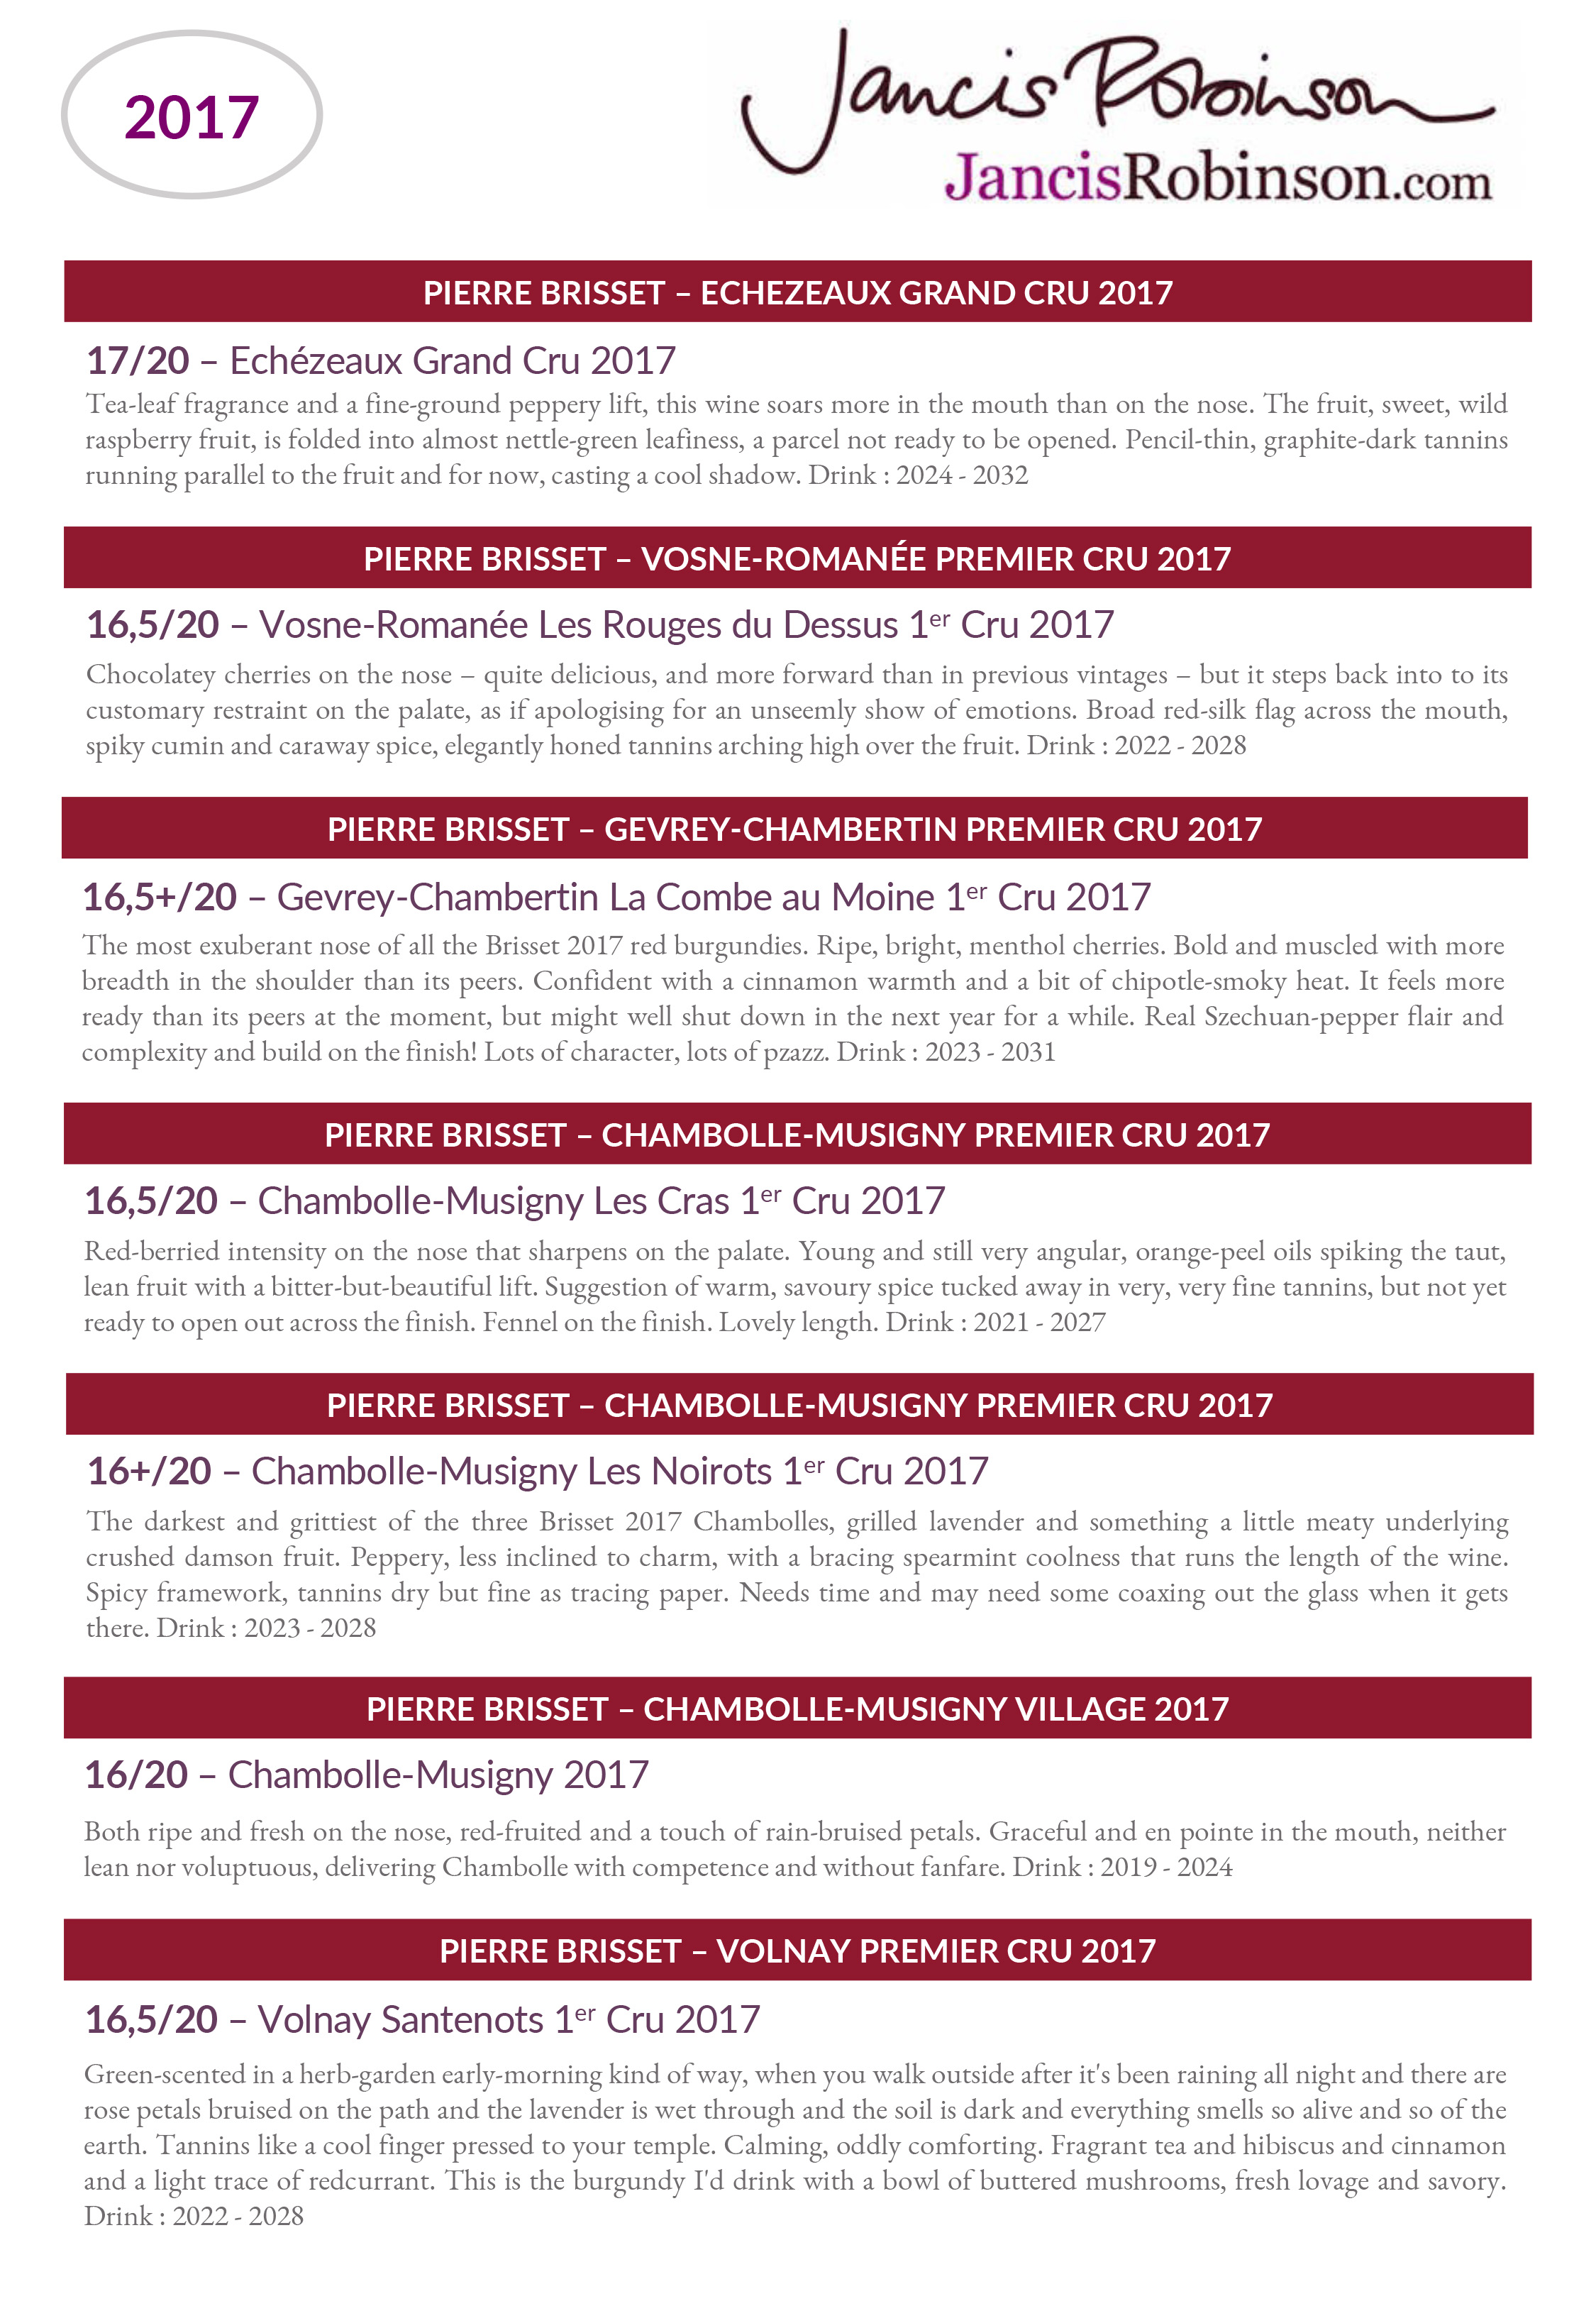 Vins rouges Pierre Brisset millesime 2017 : Notes de degustation de Jancis Robinson